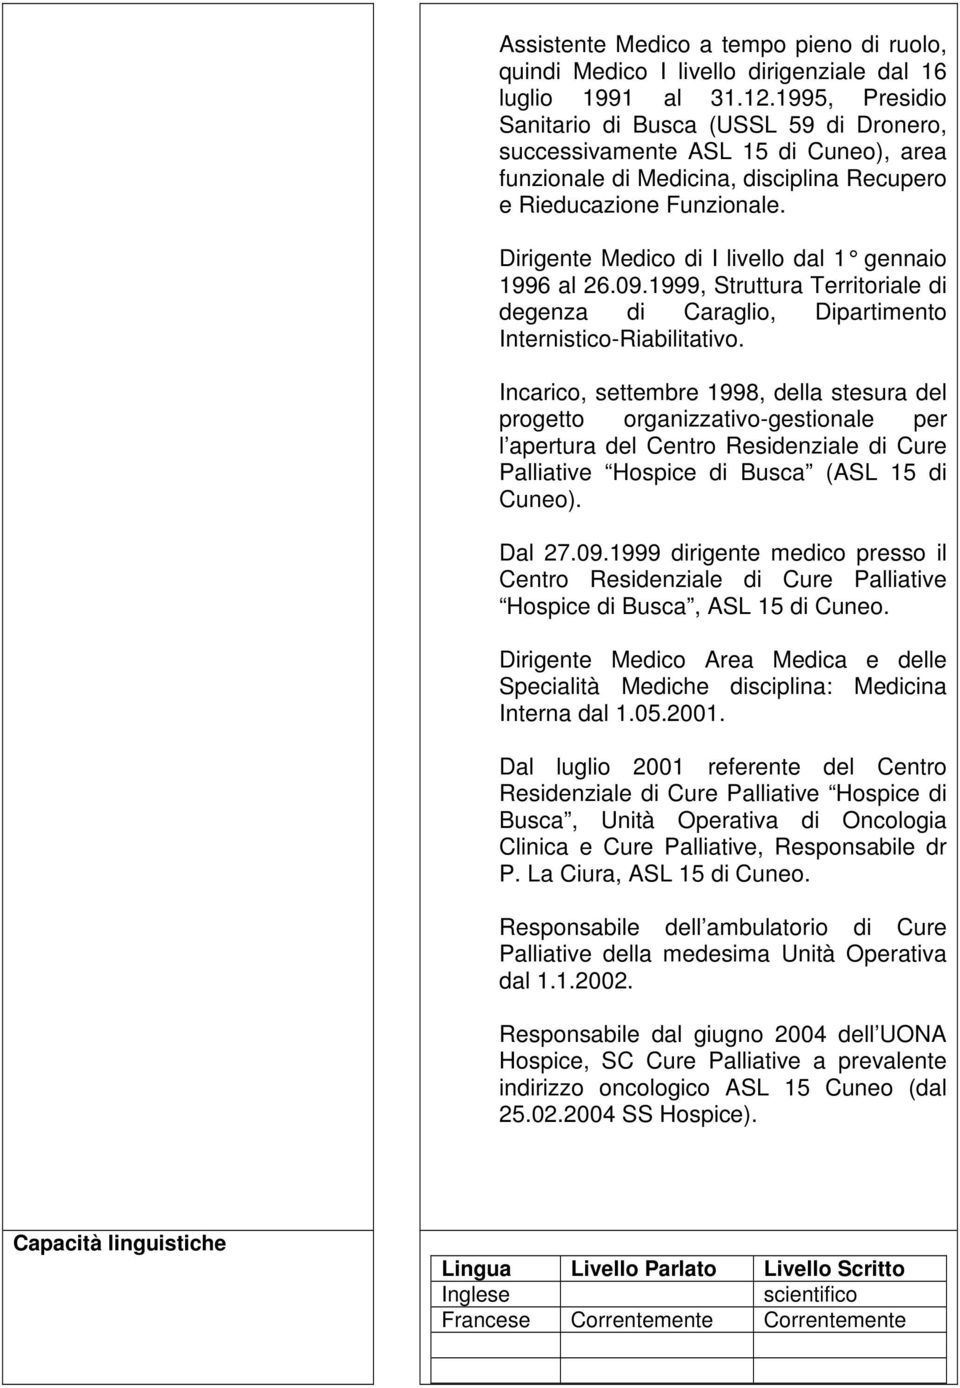 Dirigente Medico di I livello dal 1 gennaio 1996 al 26.09.1999, Struttura Territoriale di degenza di Caraglio, Dipartimento Internistico-Riabilitativo.